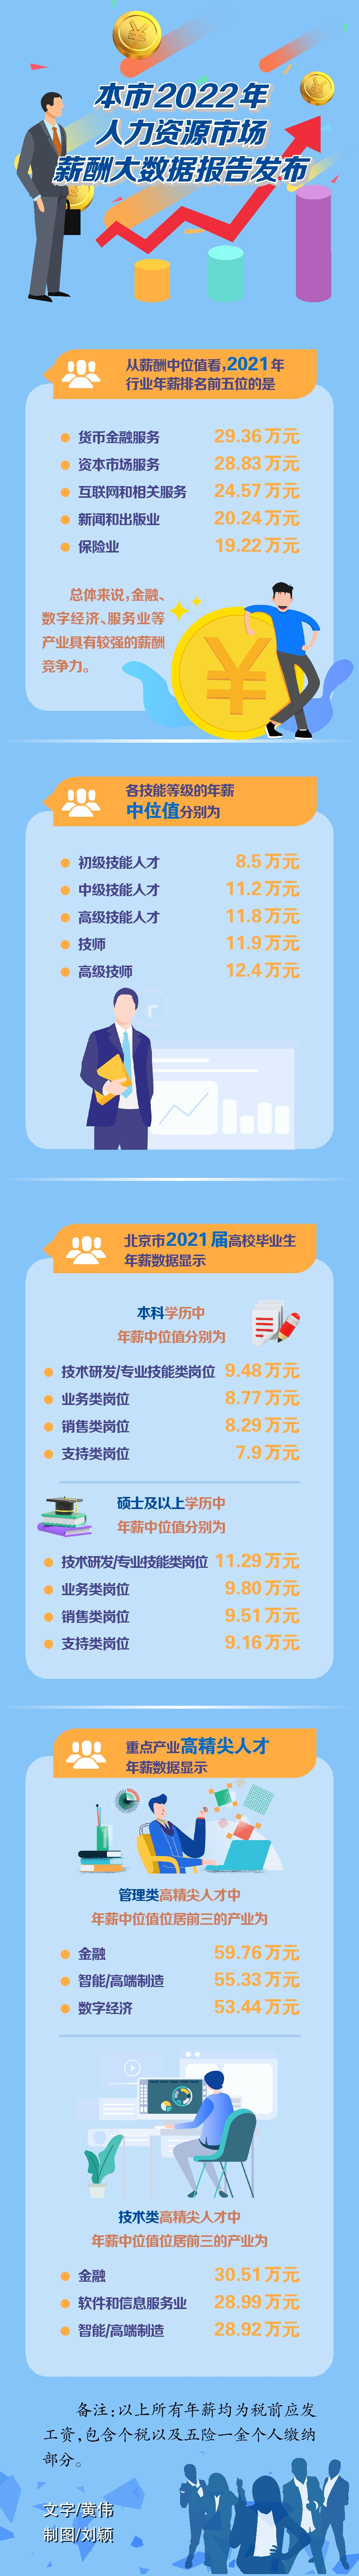 北京市2021年行业薪酬排行公布 贷币金融服务行业最大